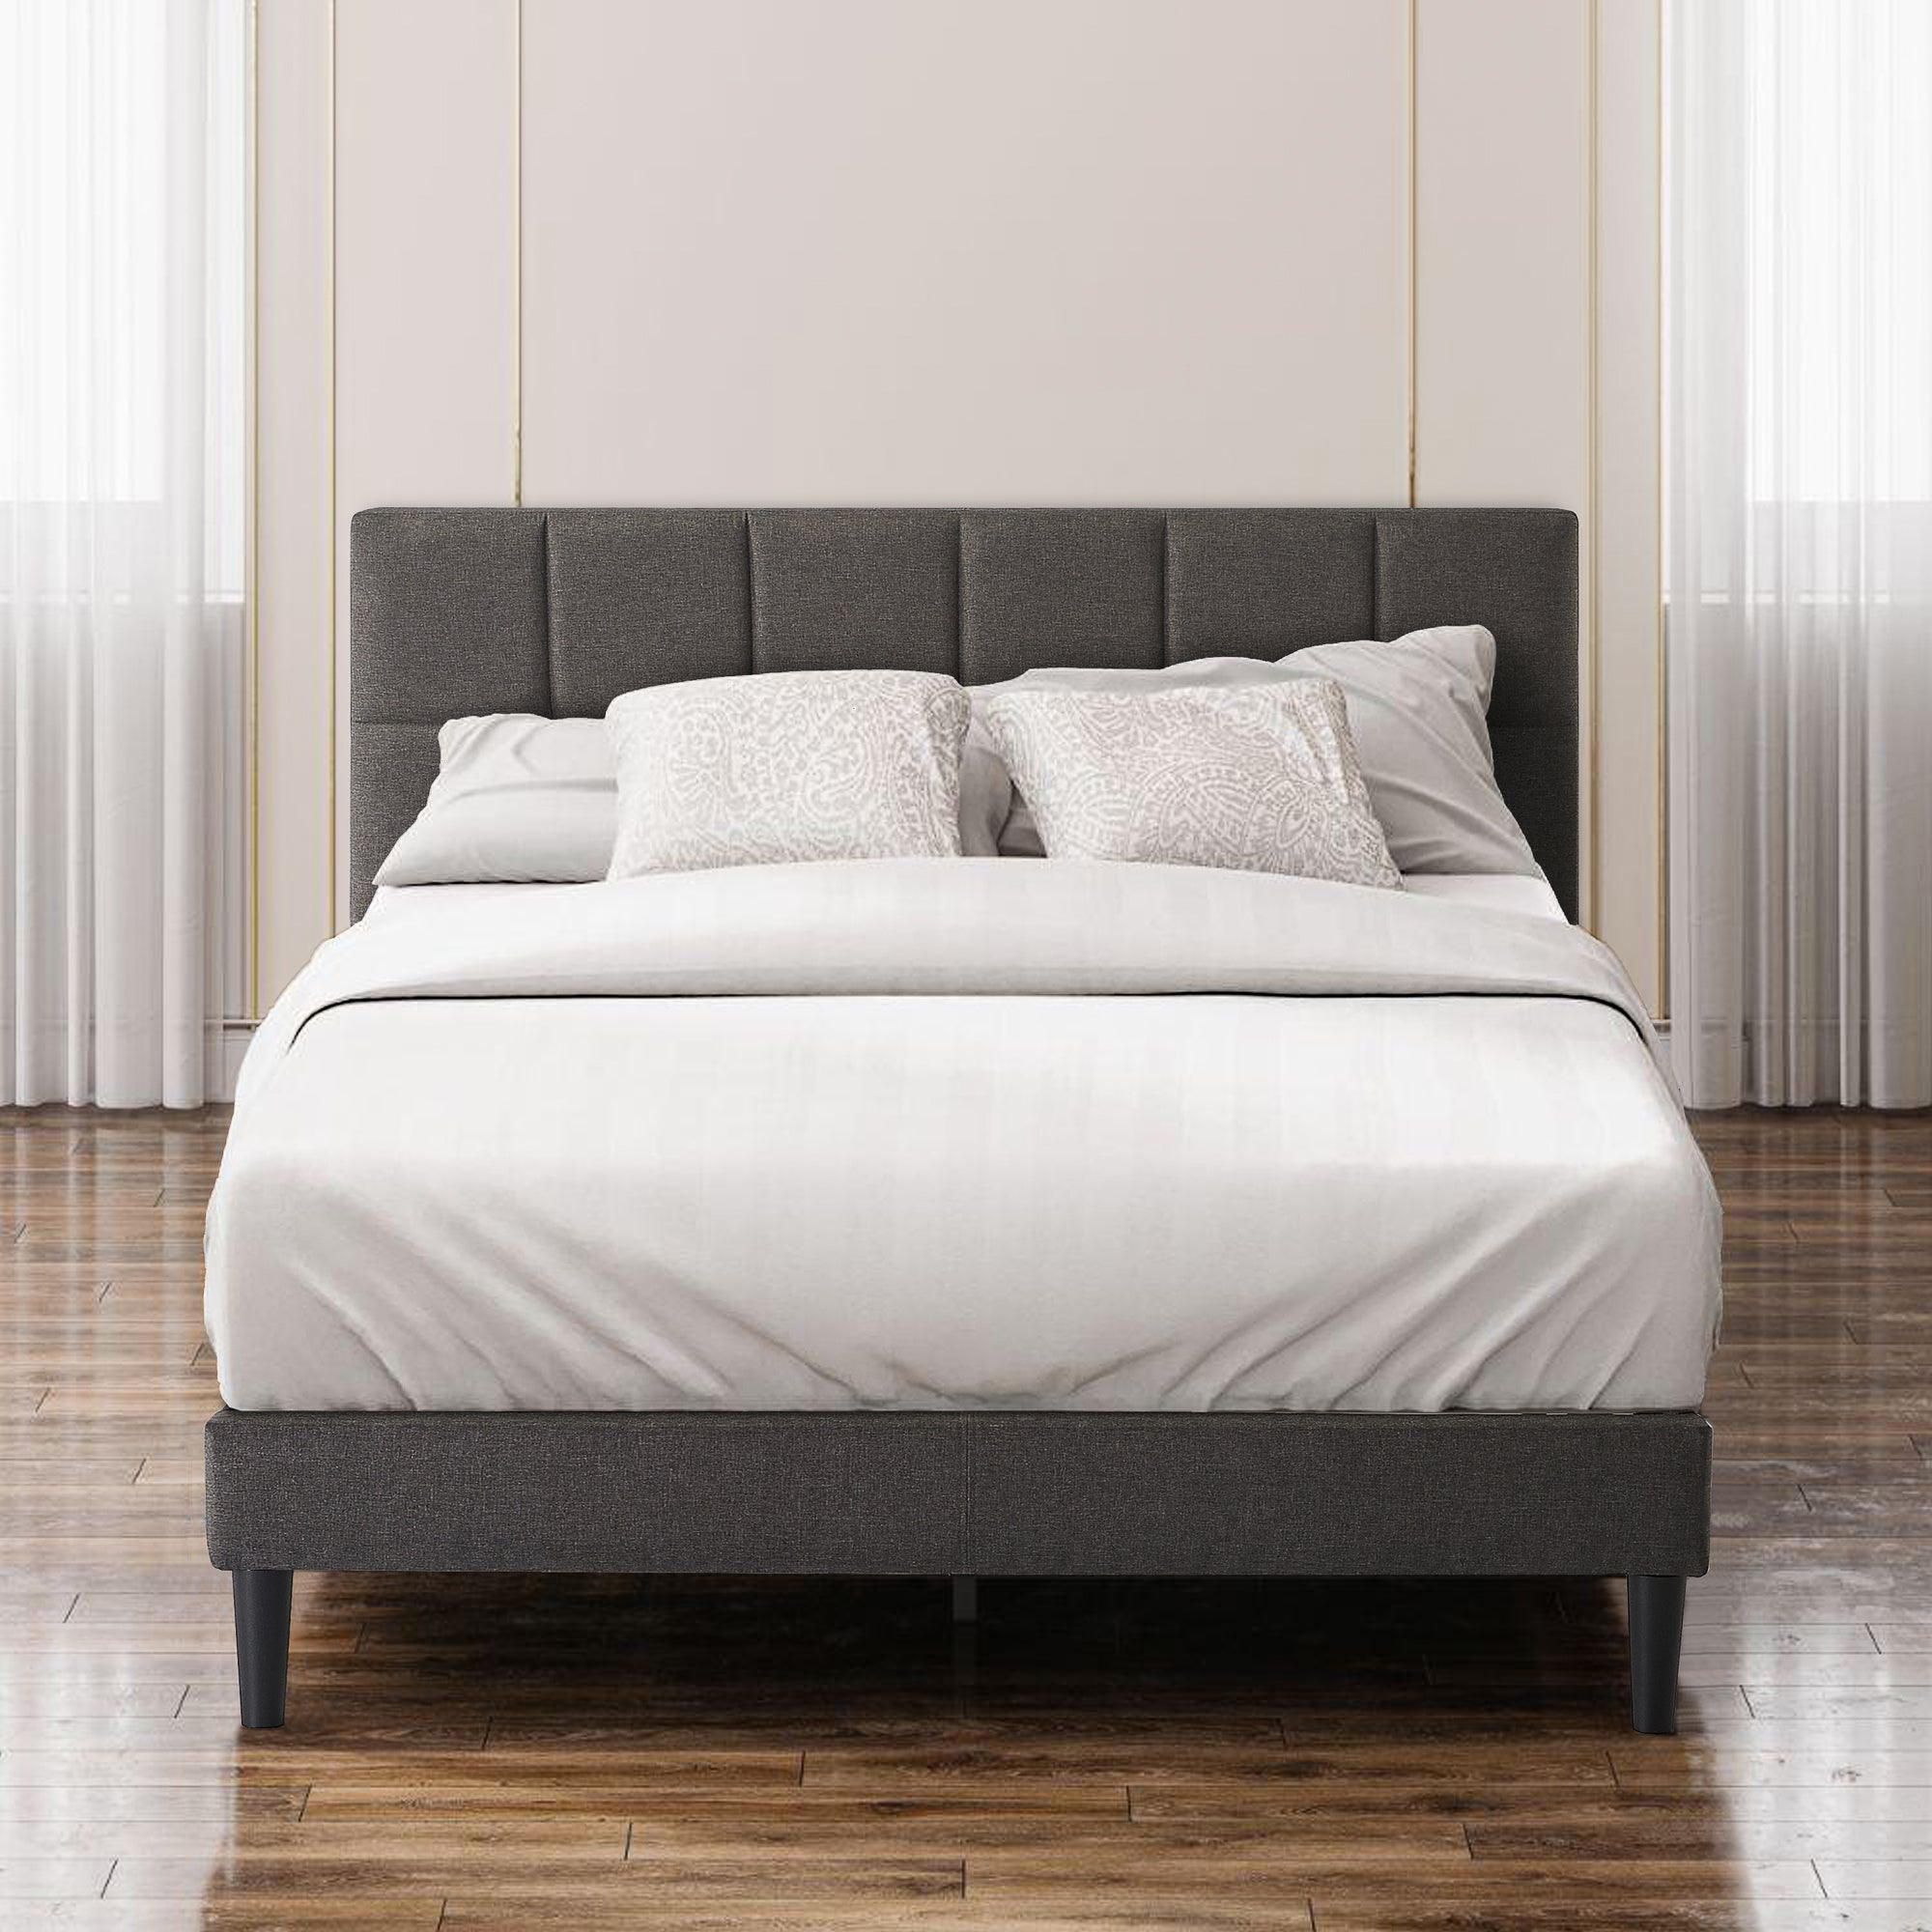 Zinus Bed Frame Dark Grey Fabric Single, Double, Queen & King